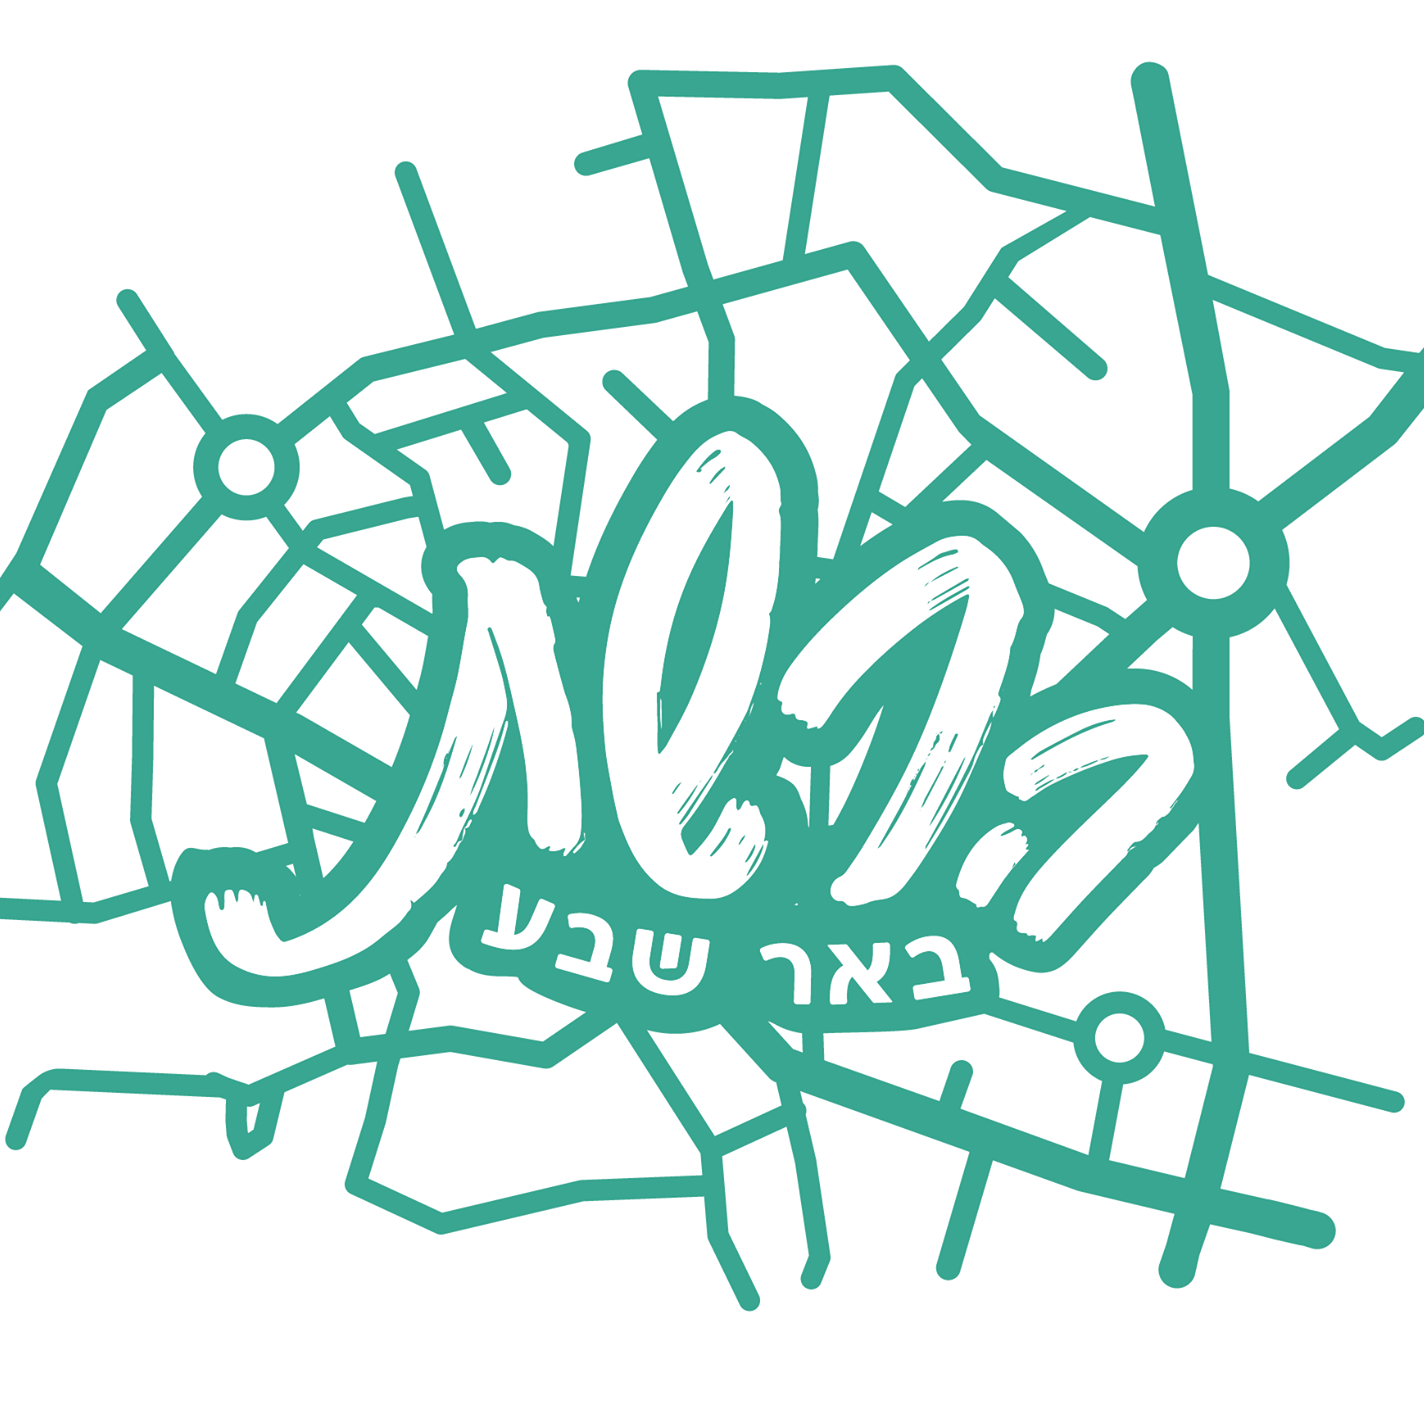 הלוגו של ארגון הרשת באר שבע